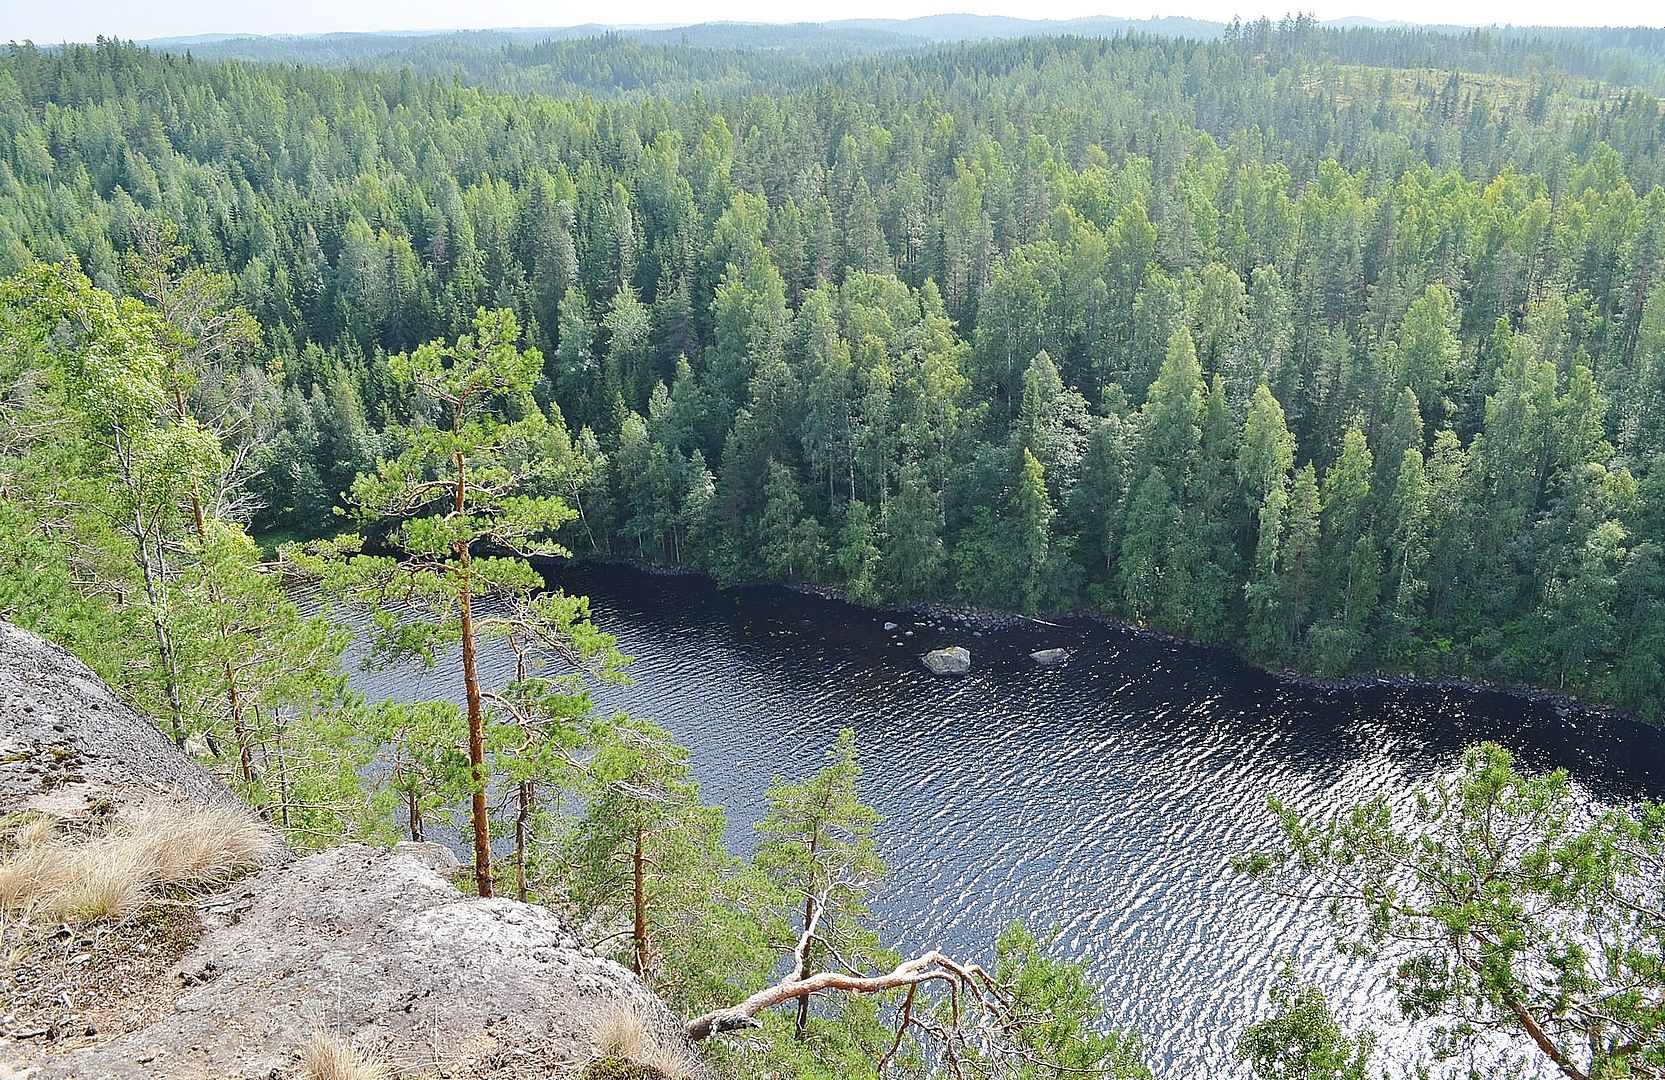  Гора Хаукавуори (Haukkavuori): одно из красивейших мест Финляндии и высочайшая 